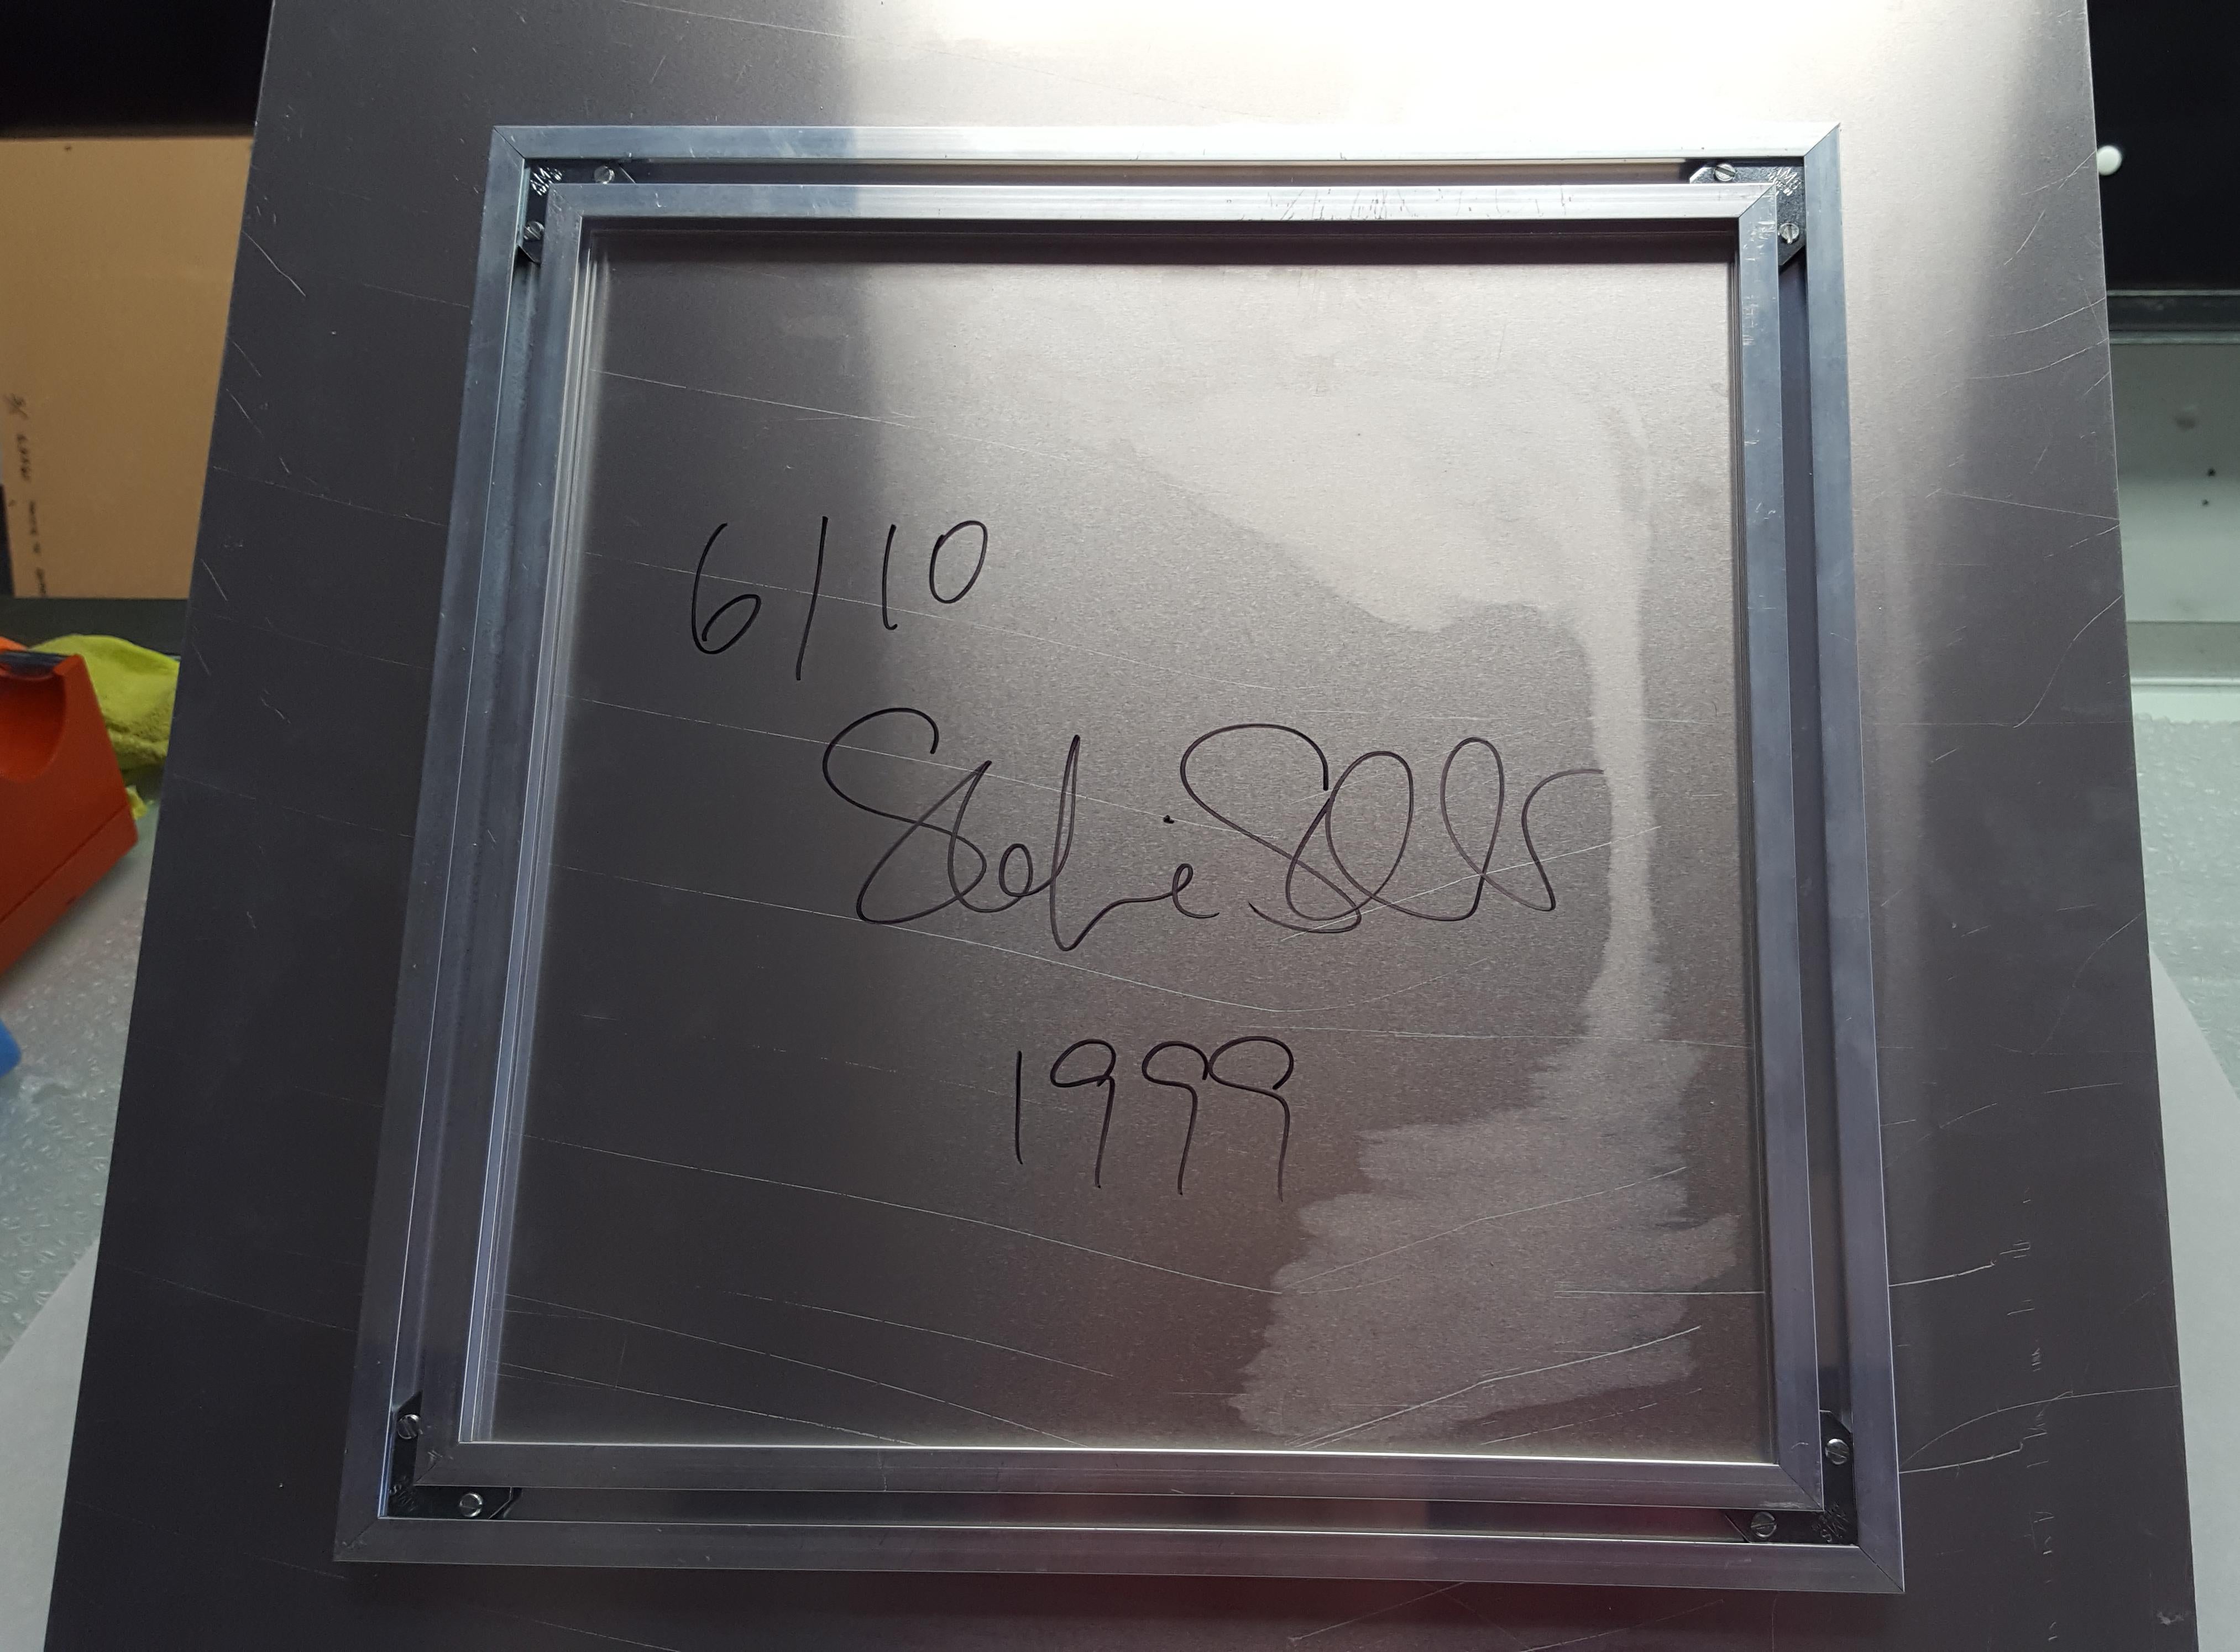 Blaue Brücke (Fremder als das Paradies) - 1999

58x57cm, 
Ausgabe 6/10. 
Analoger C-Print, von der Künstlerin handgedruckt auf Fuji Crystal Archive Papier, basierend auf dem Original-Polaroid.
Montiert auf Aluminium mit mattem